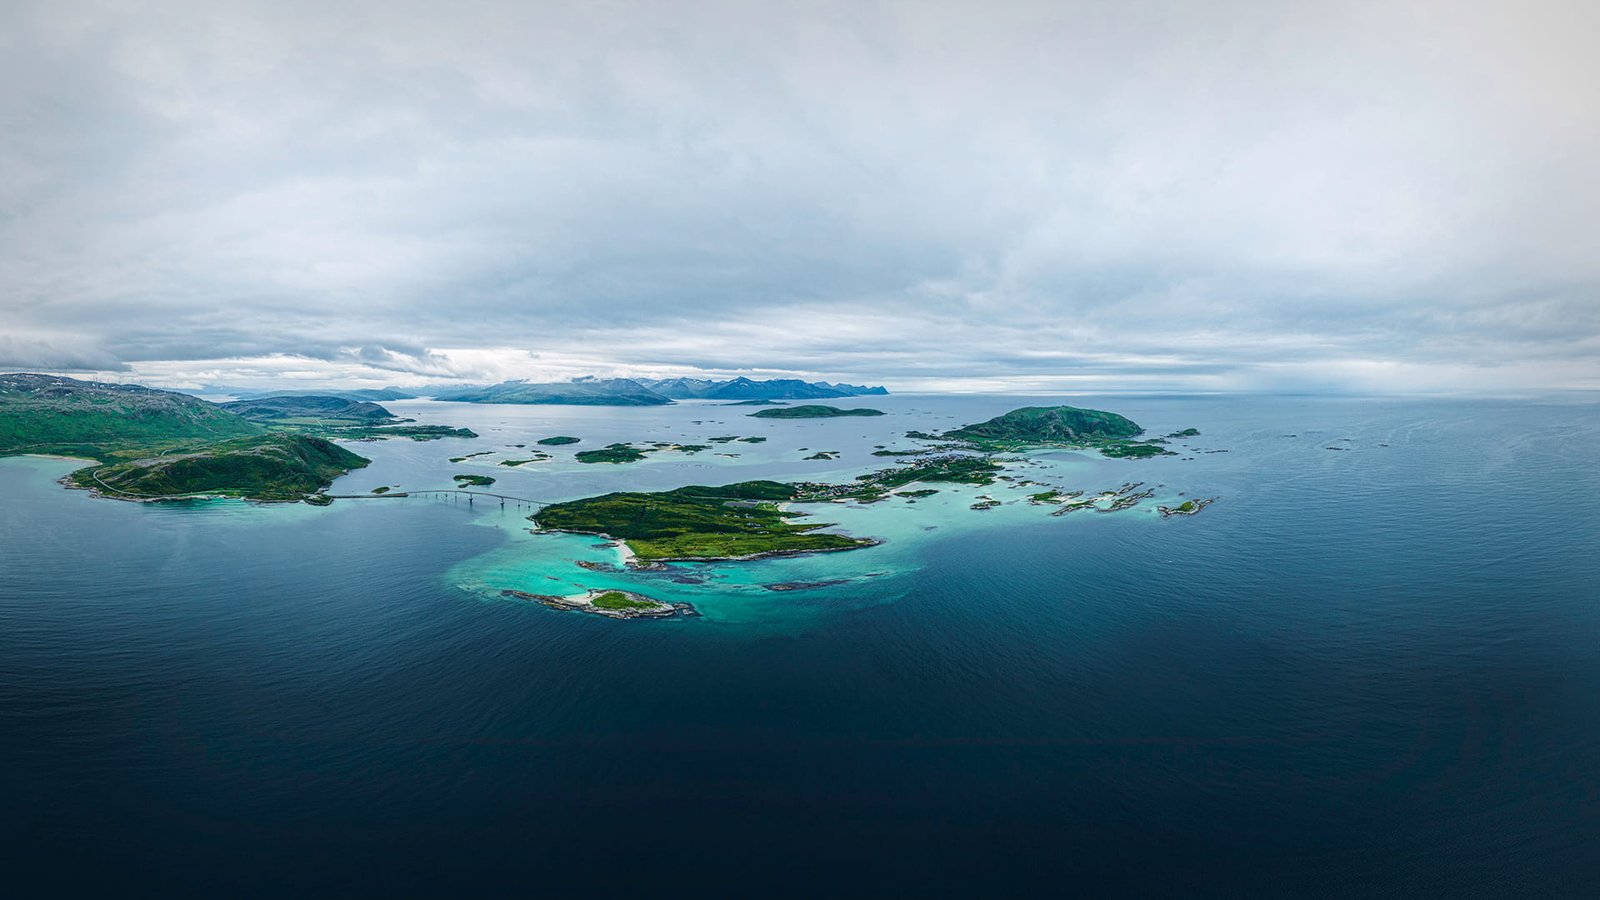 Légi drónfotó a norvégiai Sommarøy szigetről